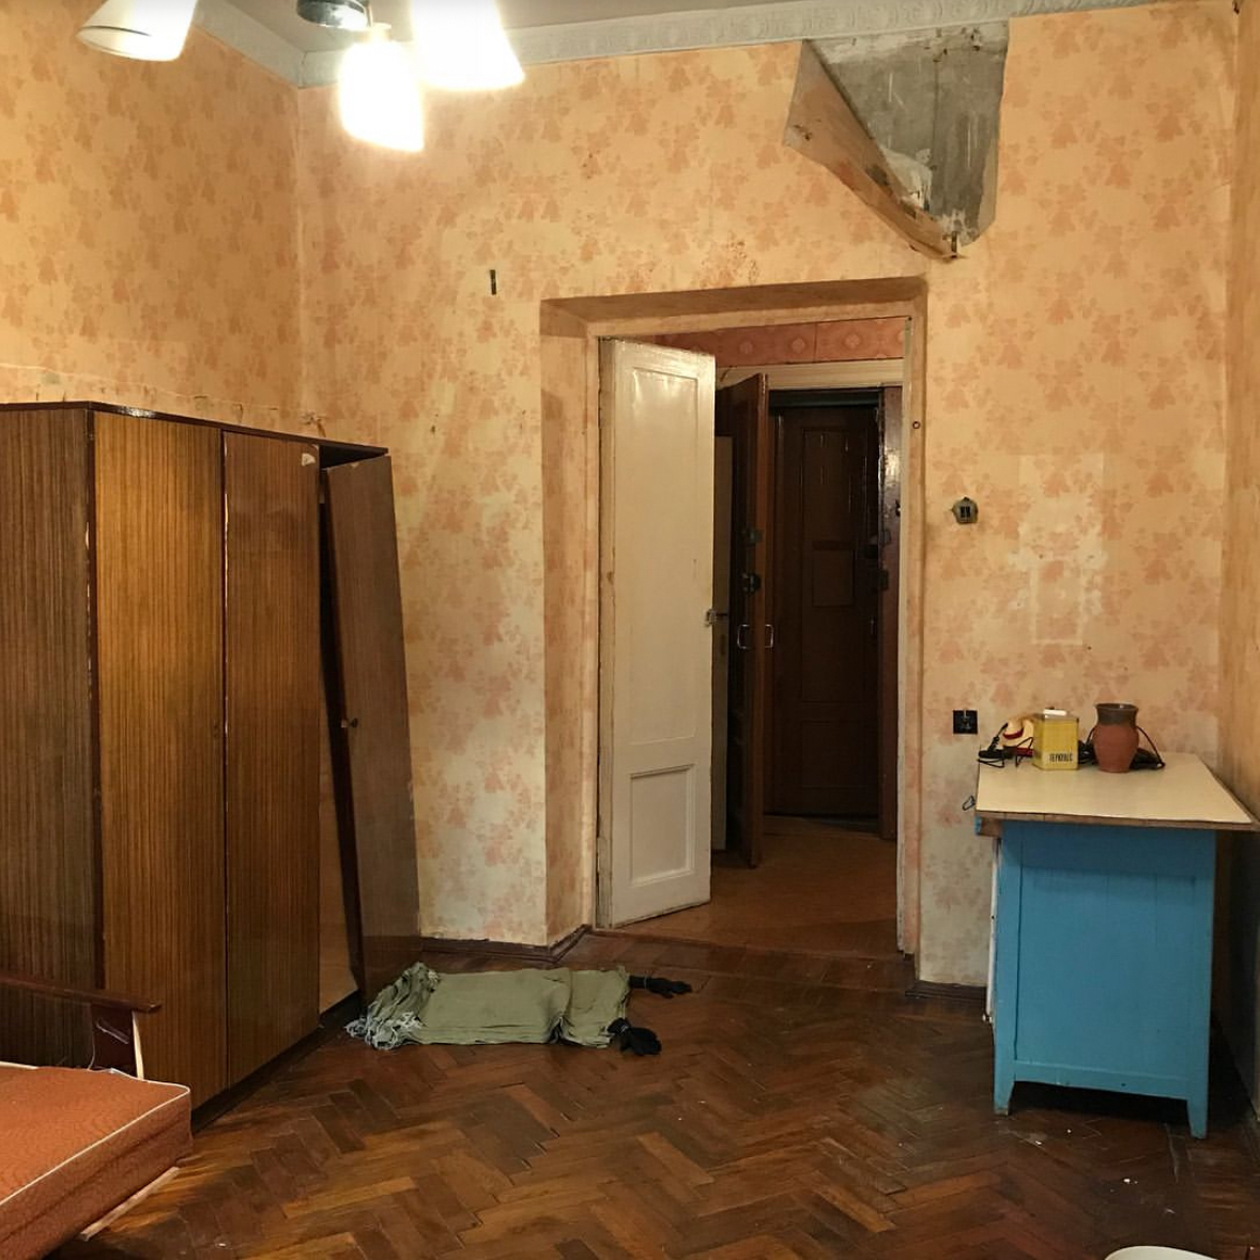 Квартира выглядела грустно: от стен отваливались обои, в ванной падала плитка. Фотографии: Елена Николаева